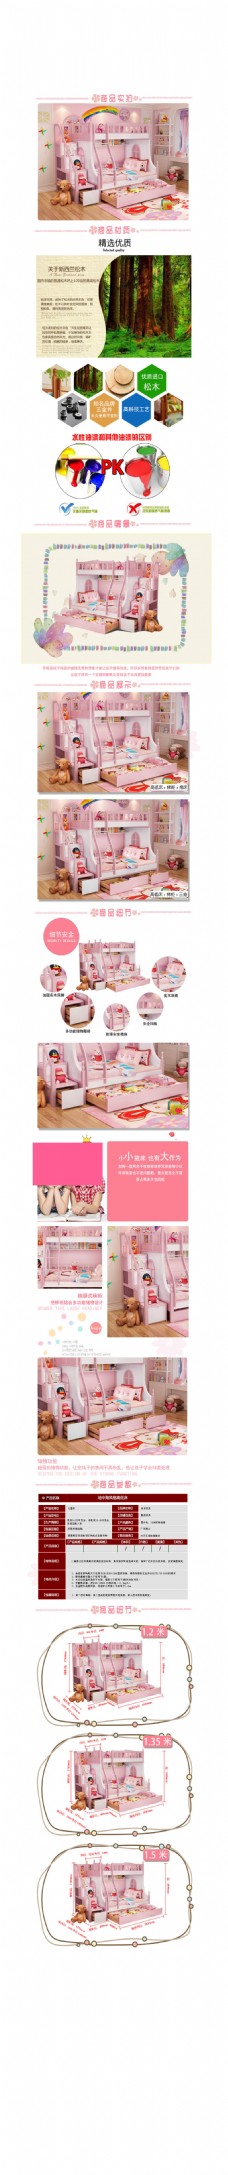 儿童家具 粉色床 现代风格